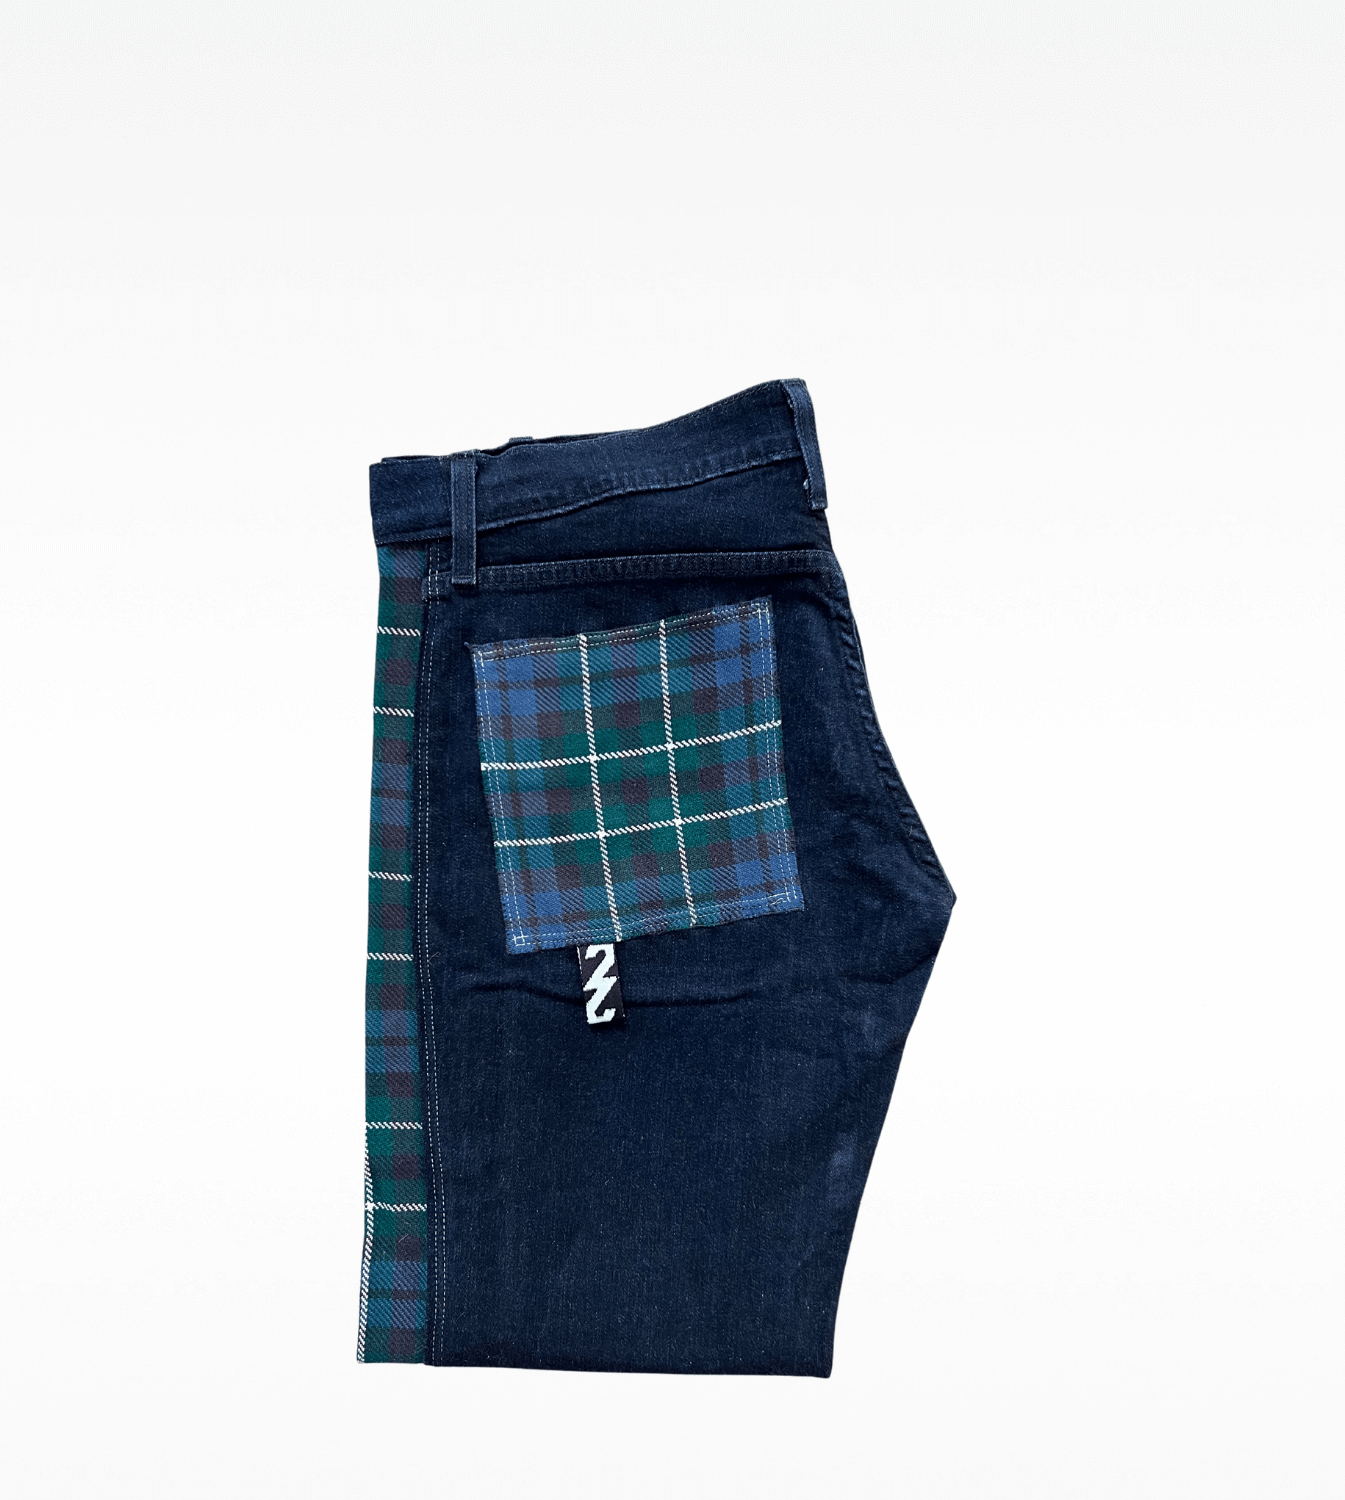 jeans-rework-levis511-2ndechance-madeinfrance-poche